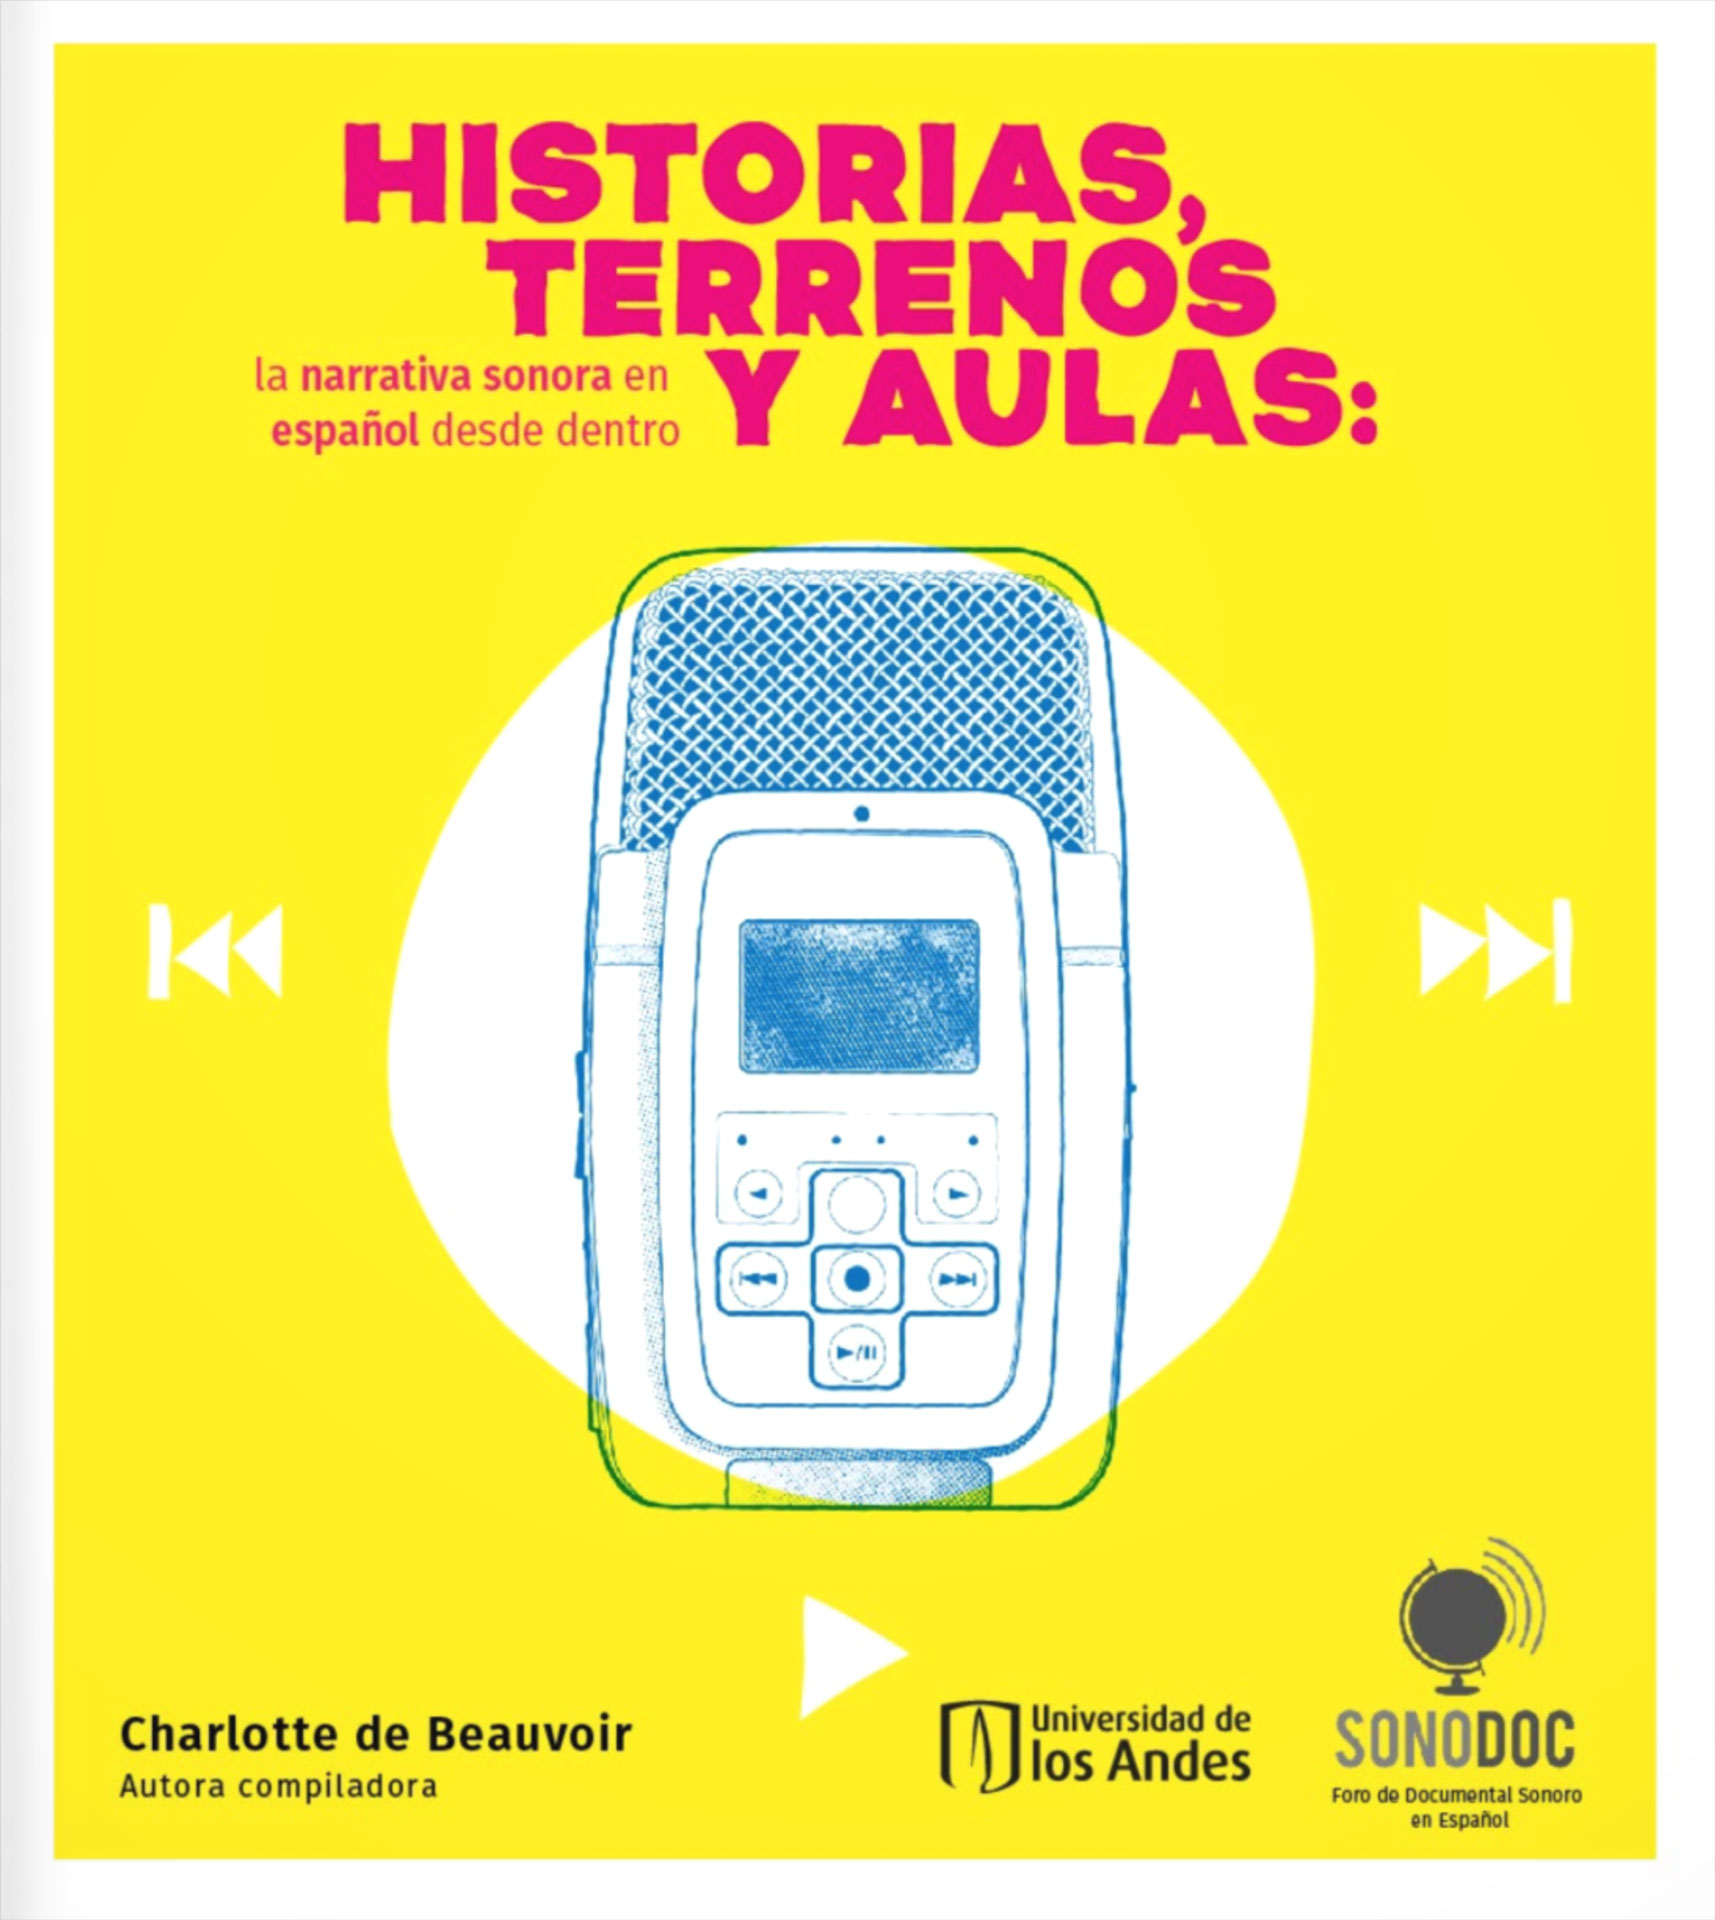 Ediciones Uniandes publica Historias, terrenos y aulas: la narrativa sonora en español desde adentro